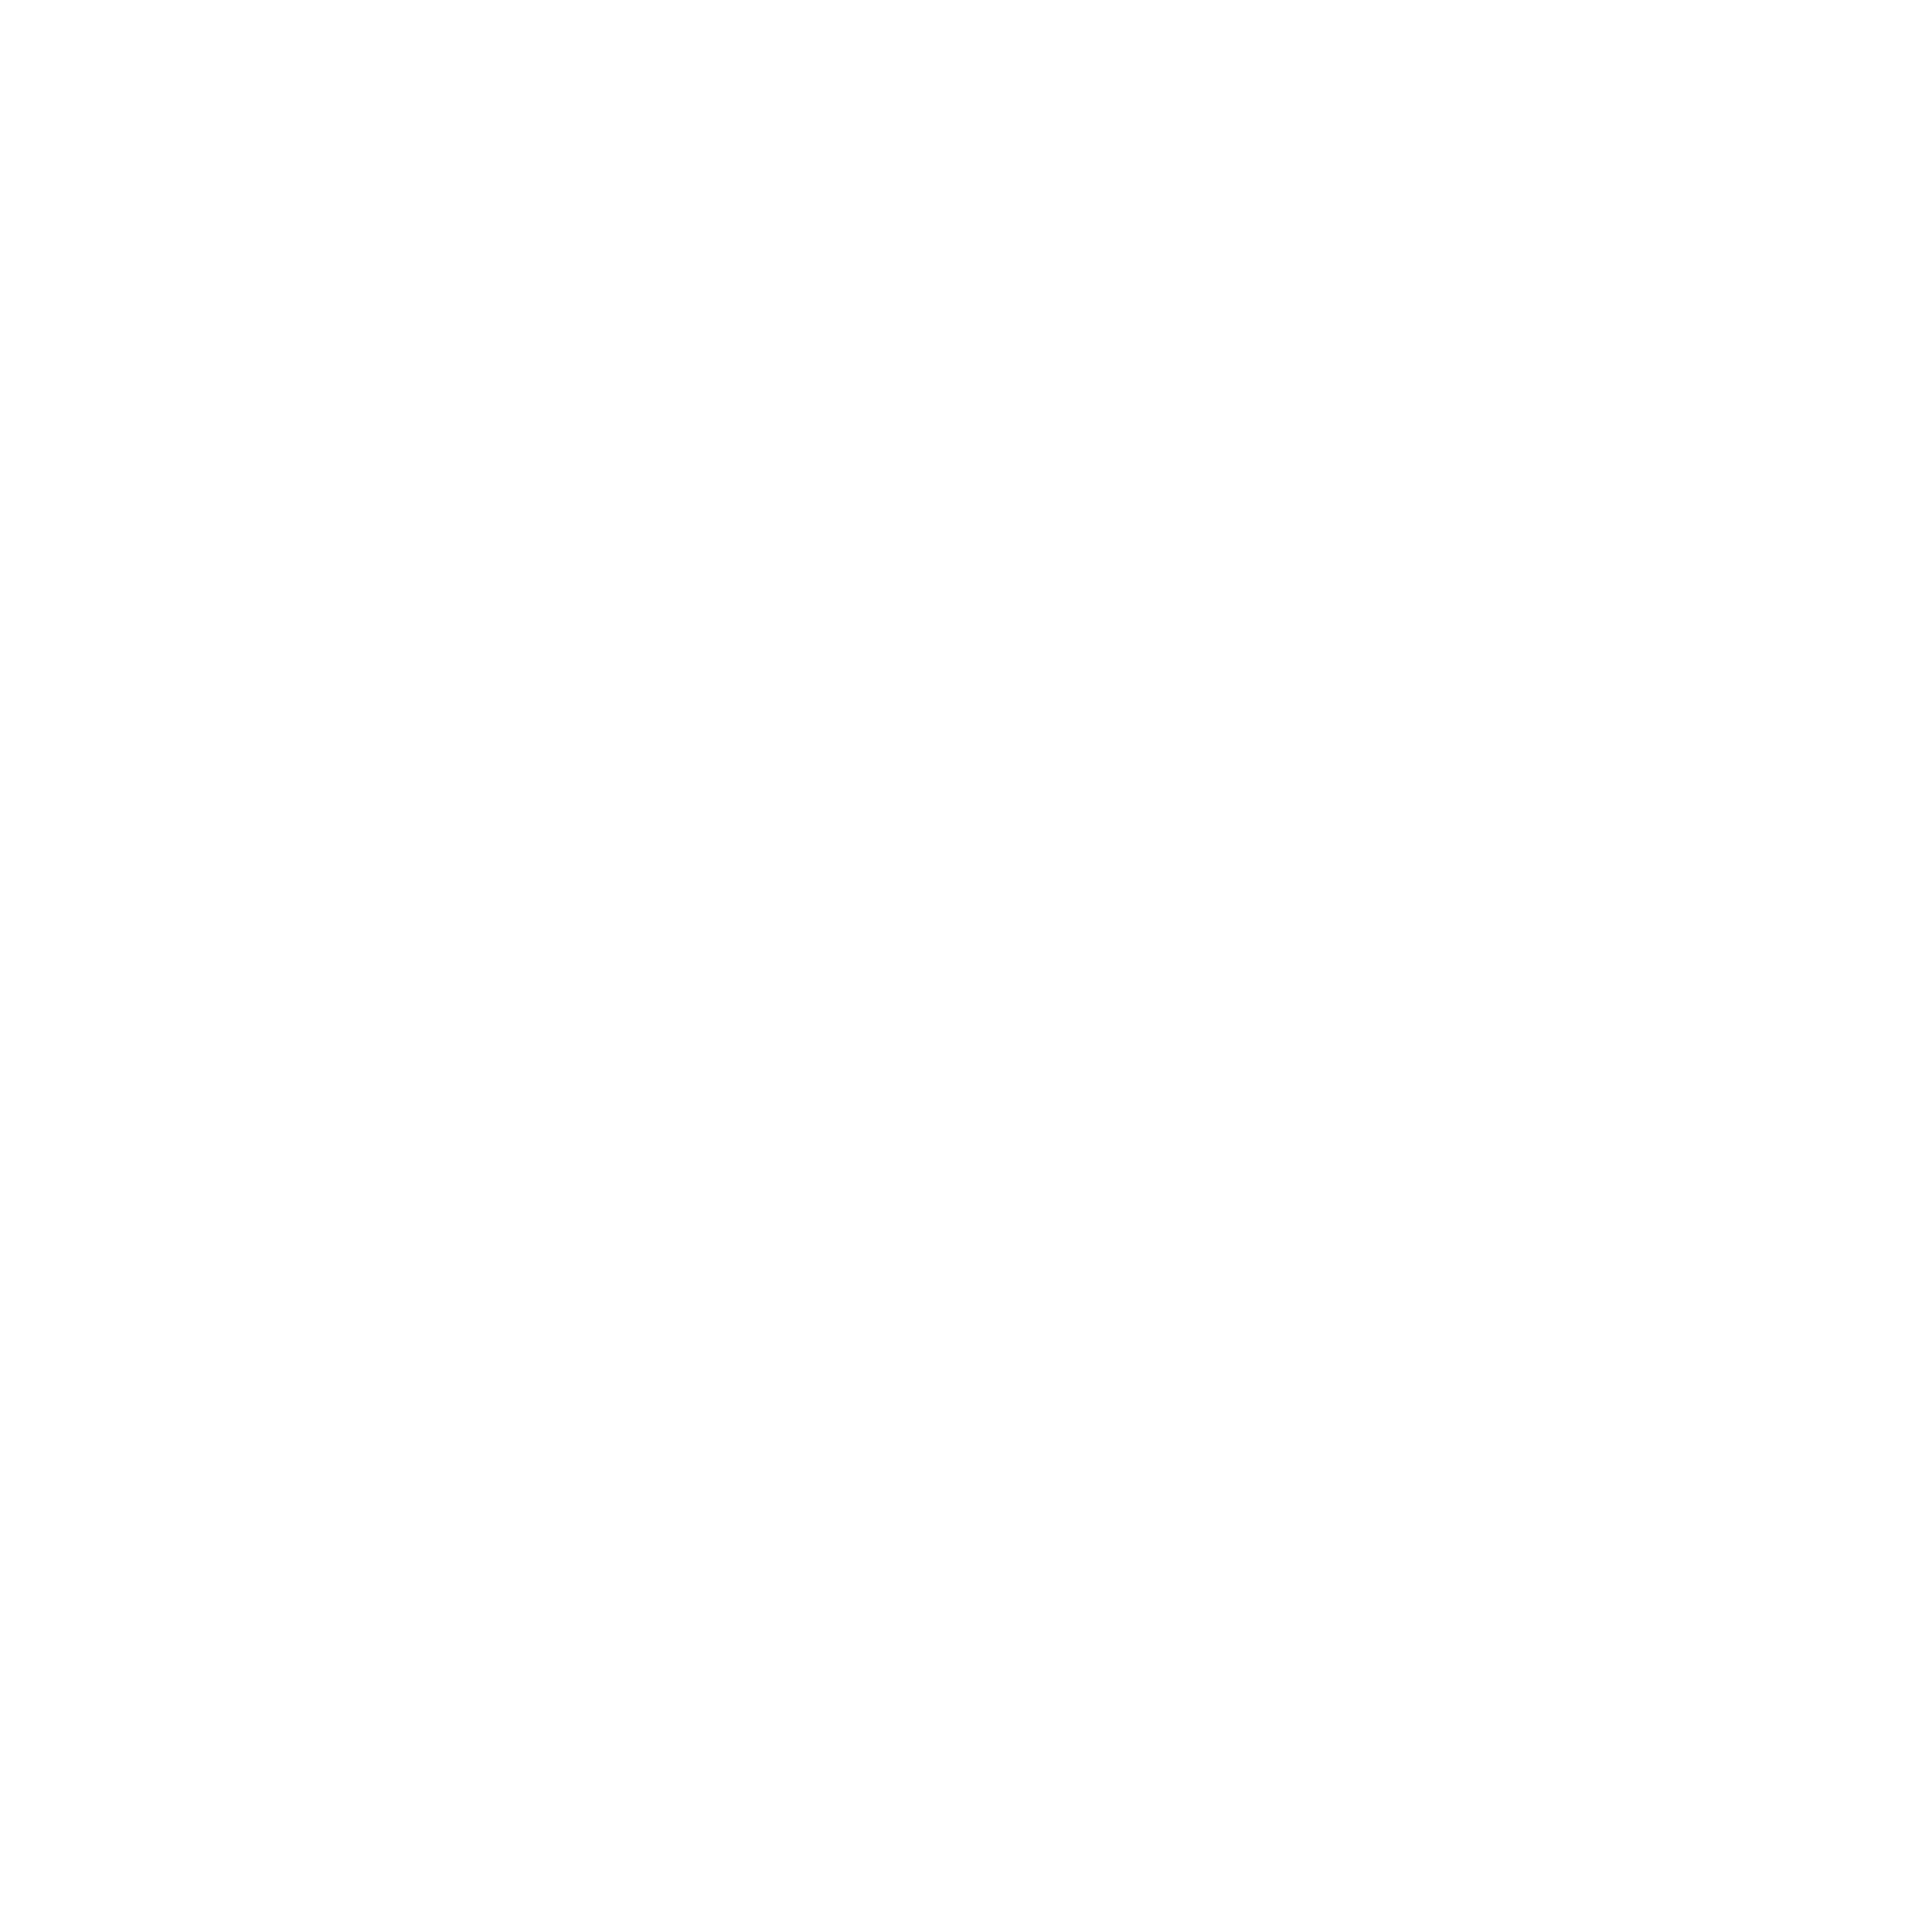 Backyard_white